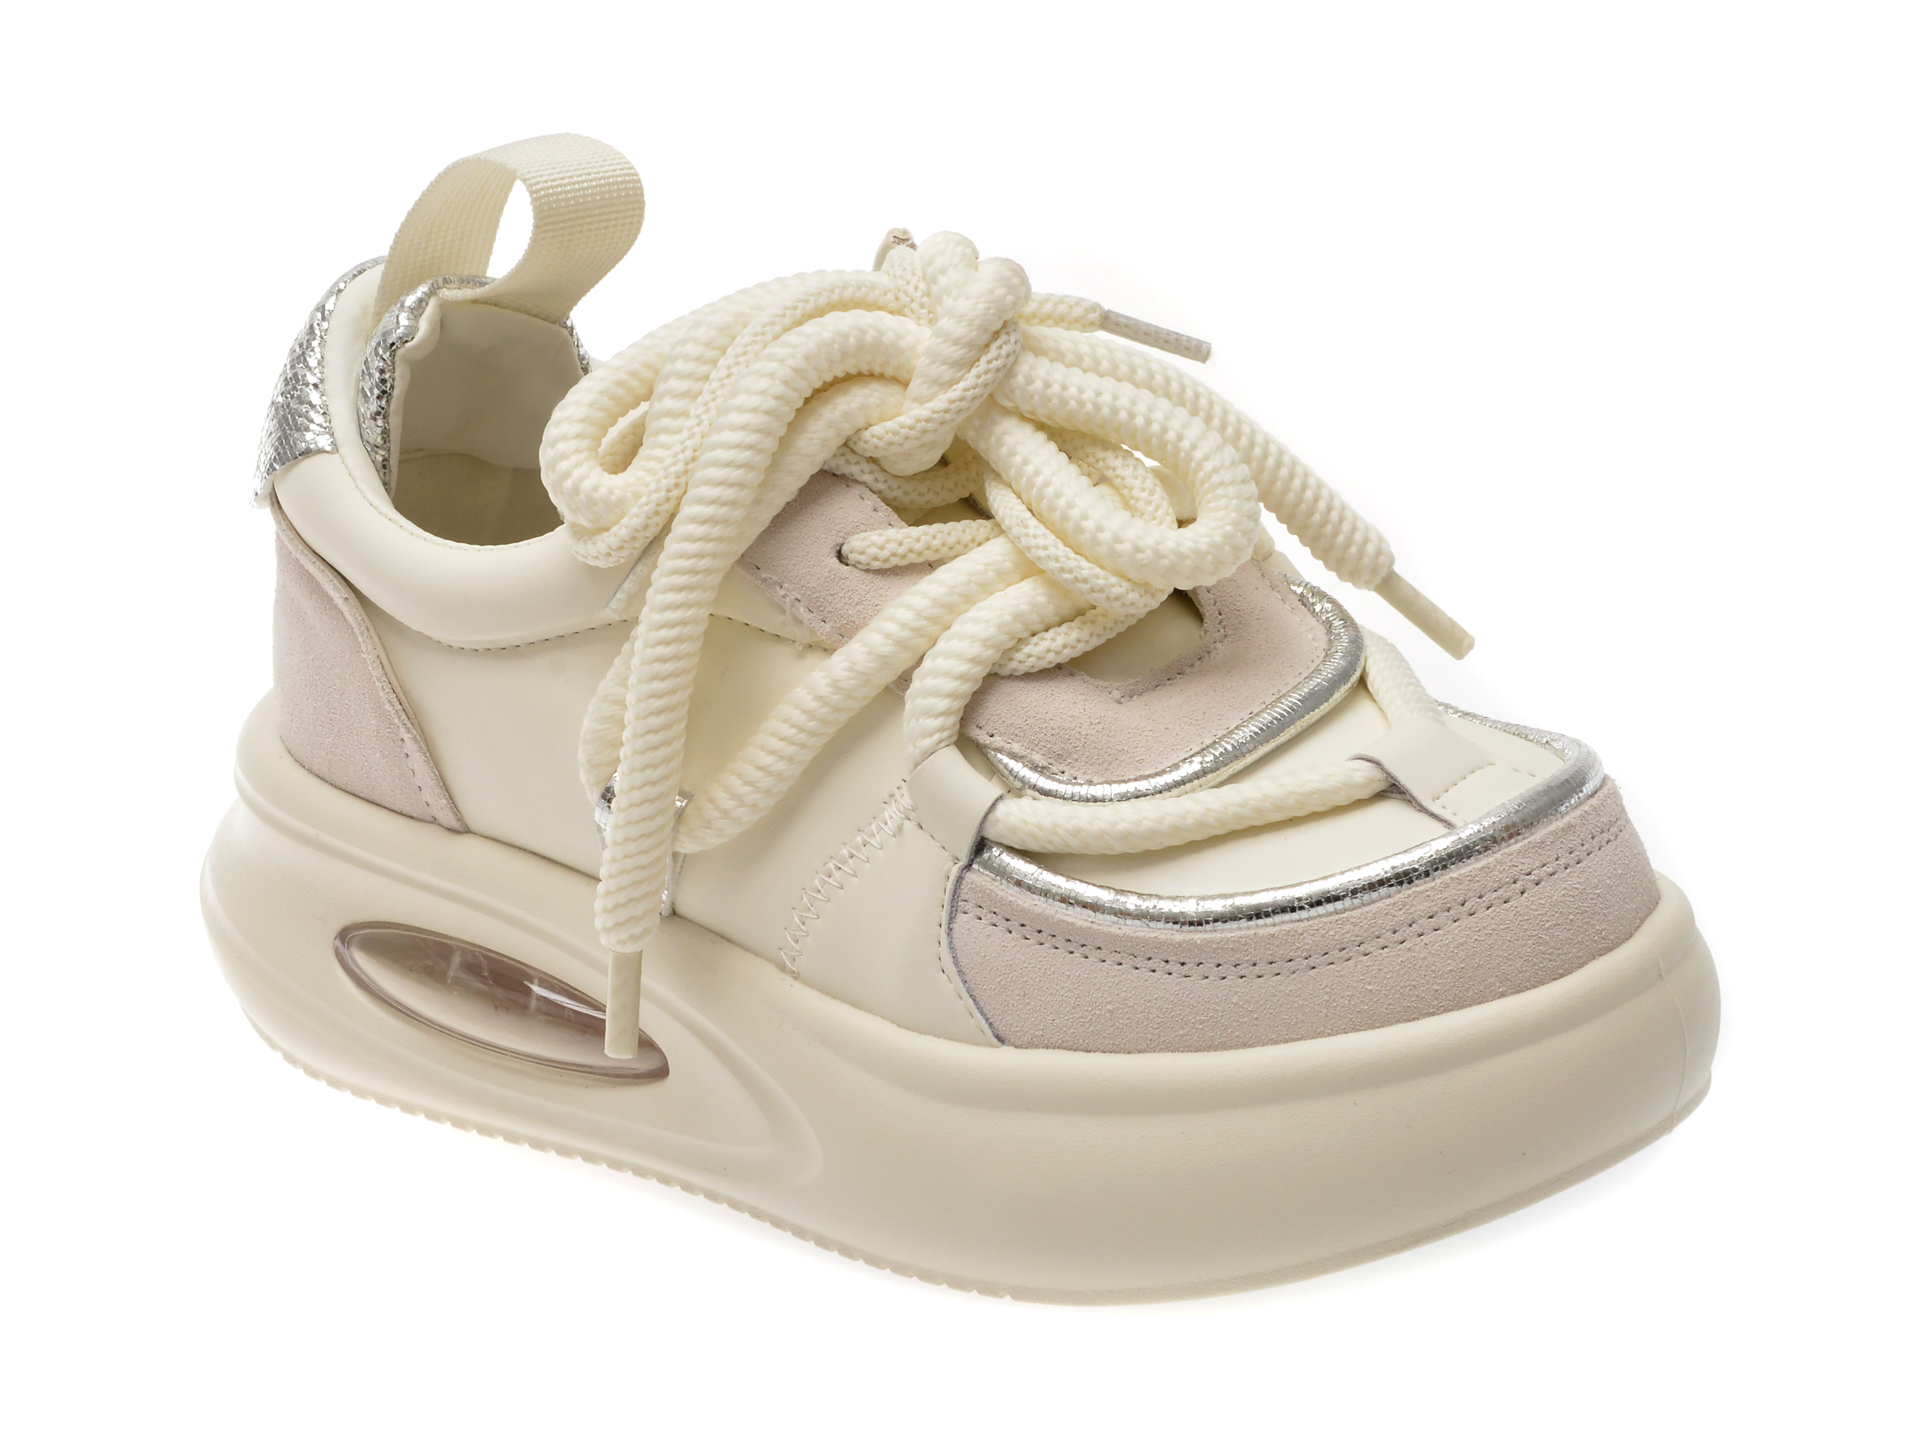 Pantofi casual FLAVIA PASSINI albi, 20245, din piele naturala